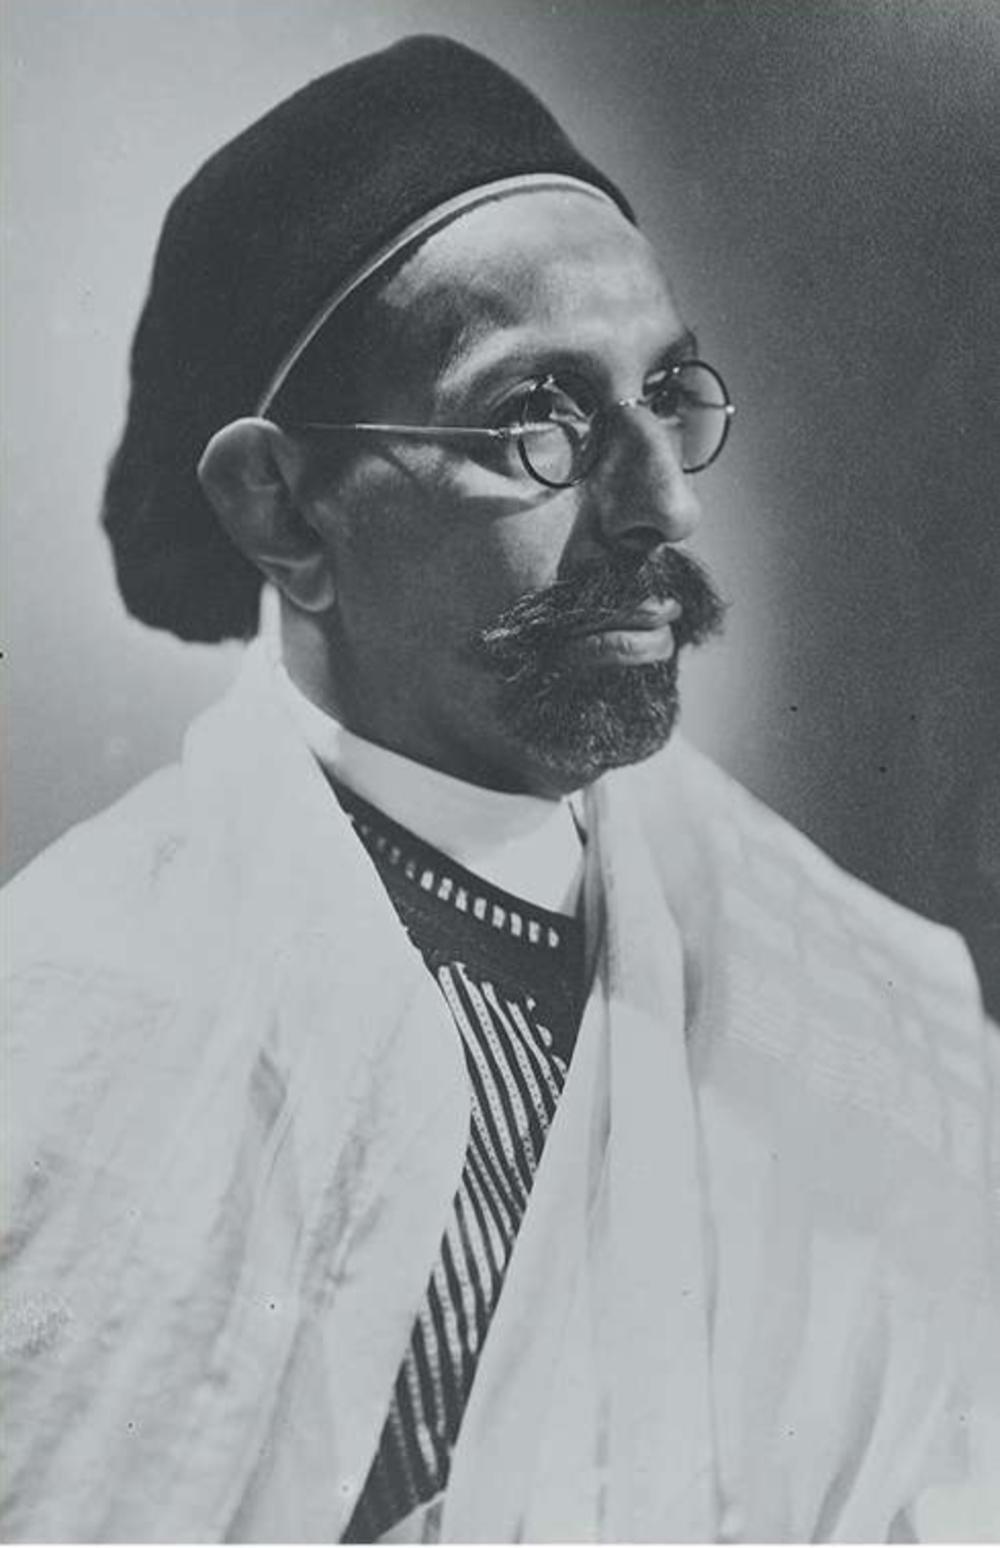 In 1951 wordt de Emir van Cyrenaica de nieuwe koning van Libië. Sayyid Mohammed Idris bin Muhammad al-Mahdi as-Senussi laat zich Idris van Libië noemen. (Nationaal Archief, collectie Anefo)